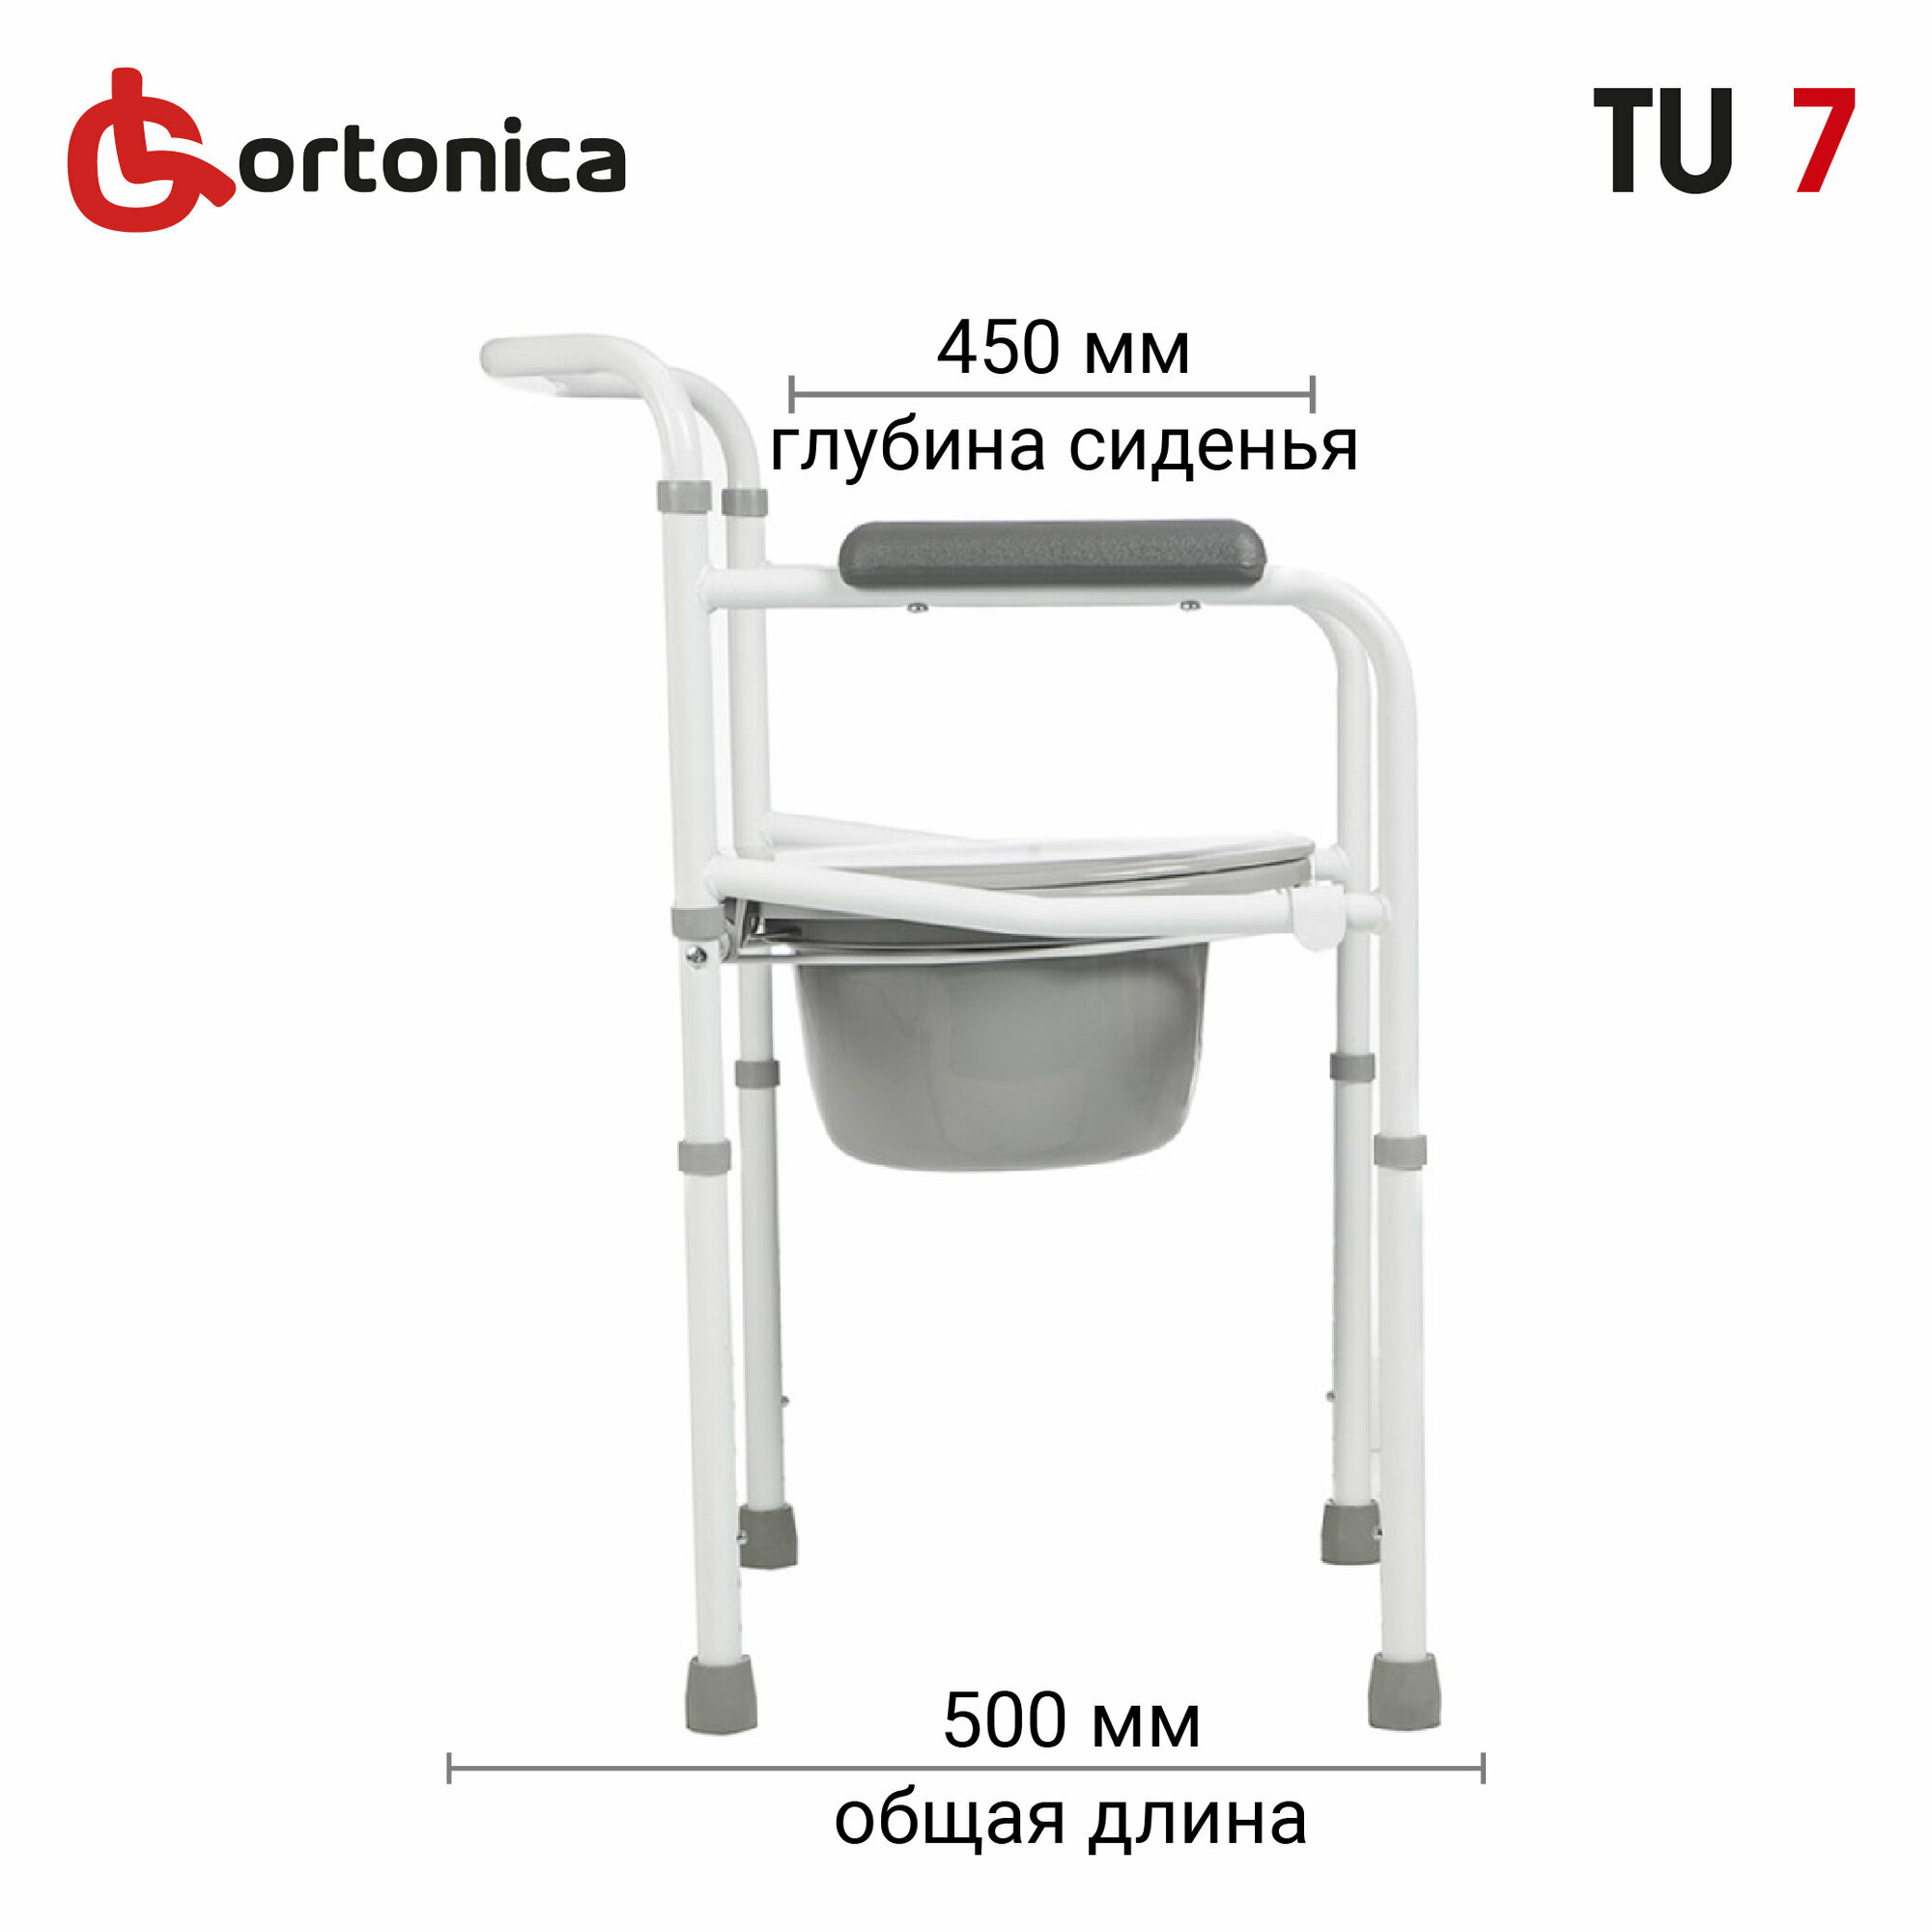 Cтул туалет для пожилых и инвалидов складной регулируемый по высоте Ortonica TU 7 ширина сиденья 43 см до 120 кг Код ФСС 23-01-02